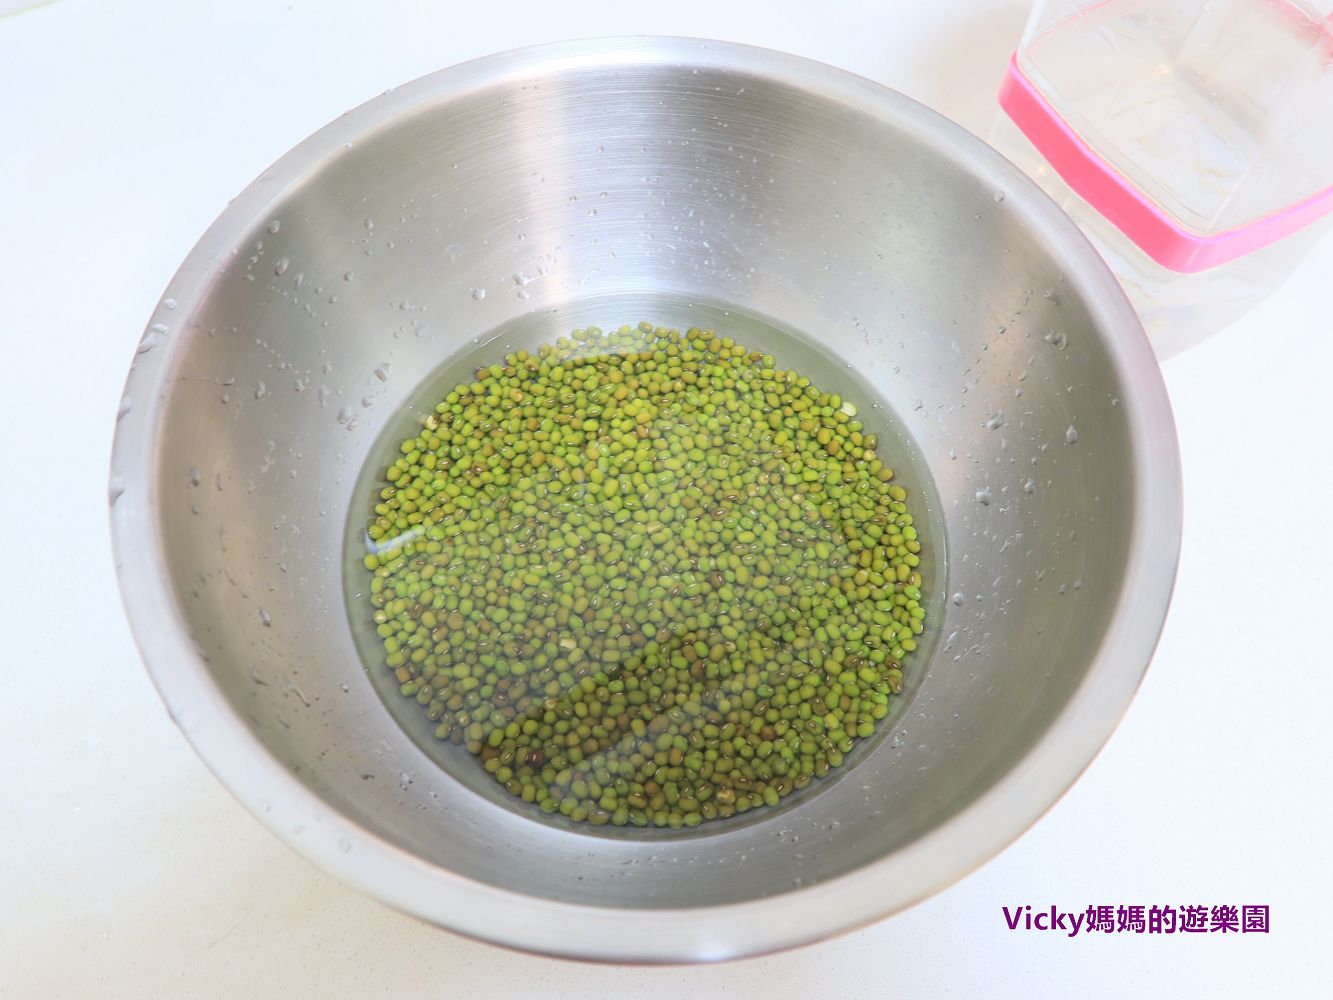 簡易料理︱沁涼綠豆湯：只要兩步驟，就可喝到冰冰涼涼綠豆湯，夏天就要喝這個來消暑